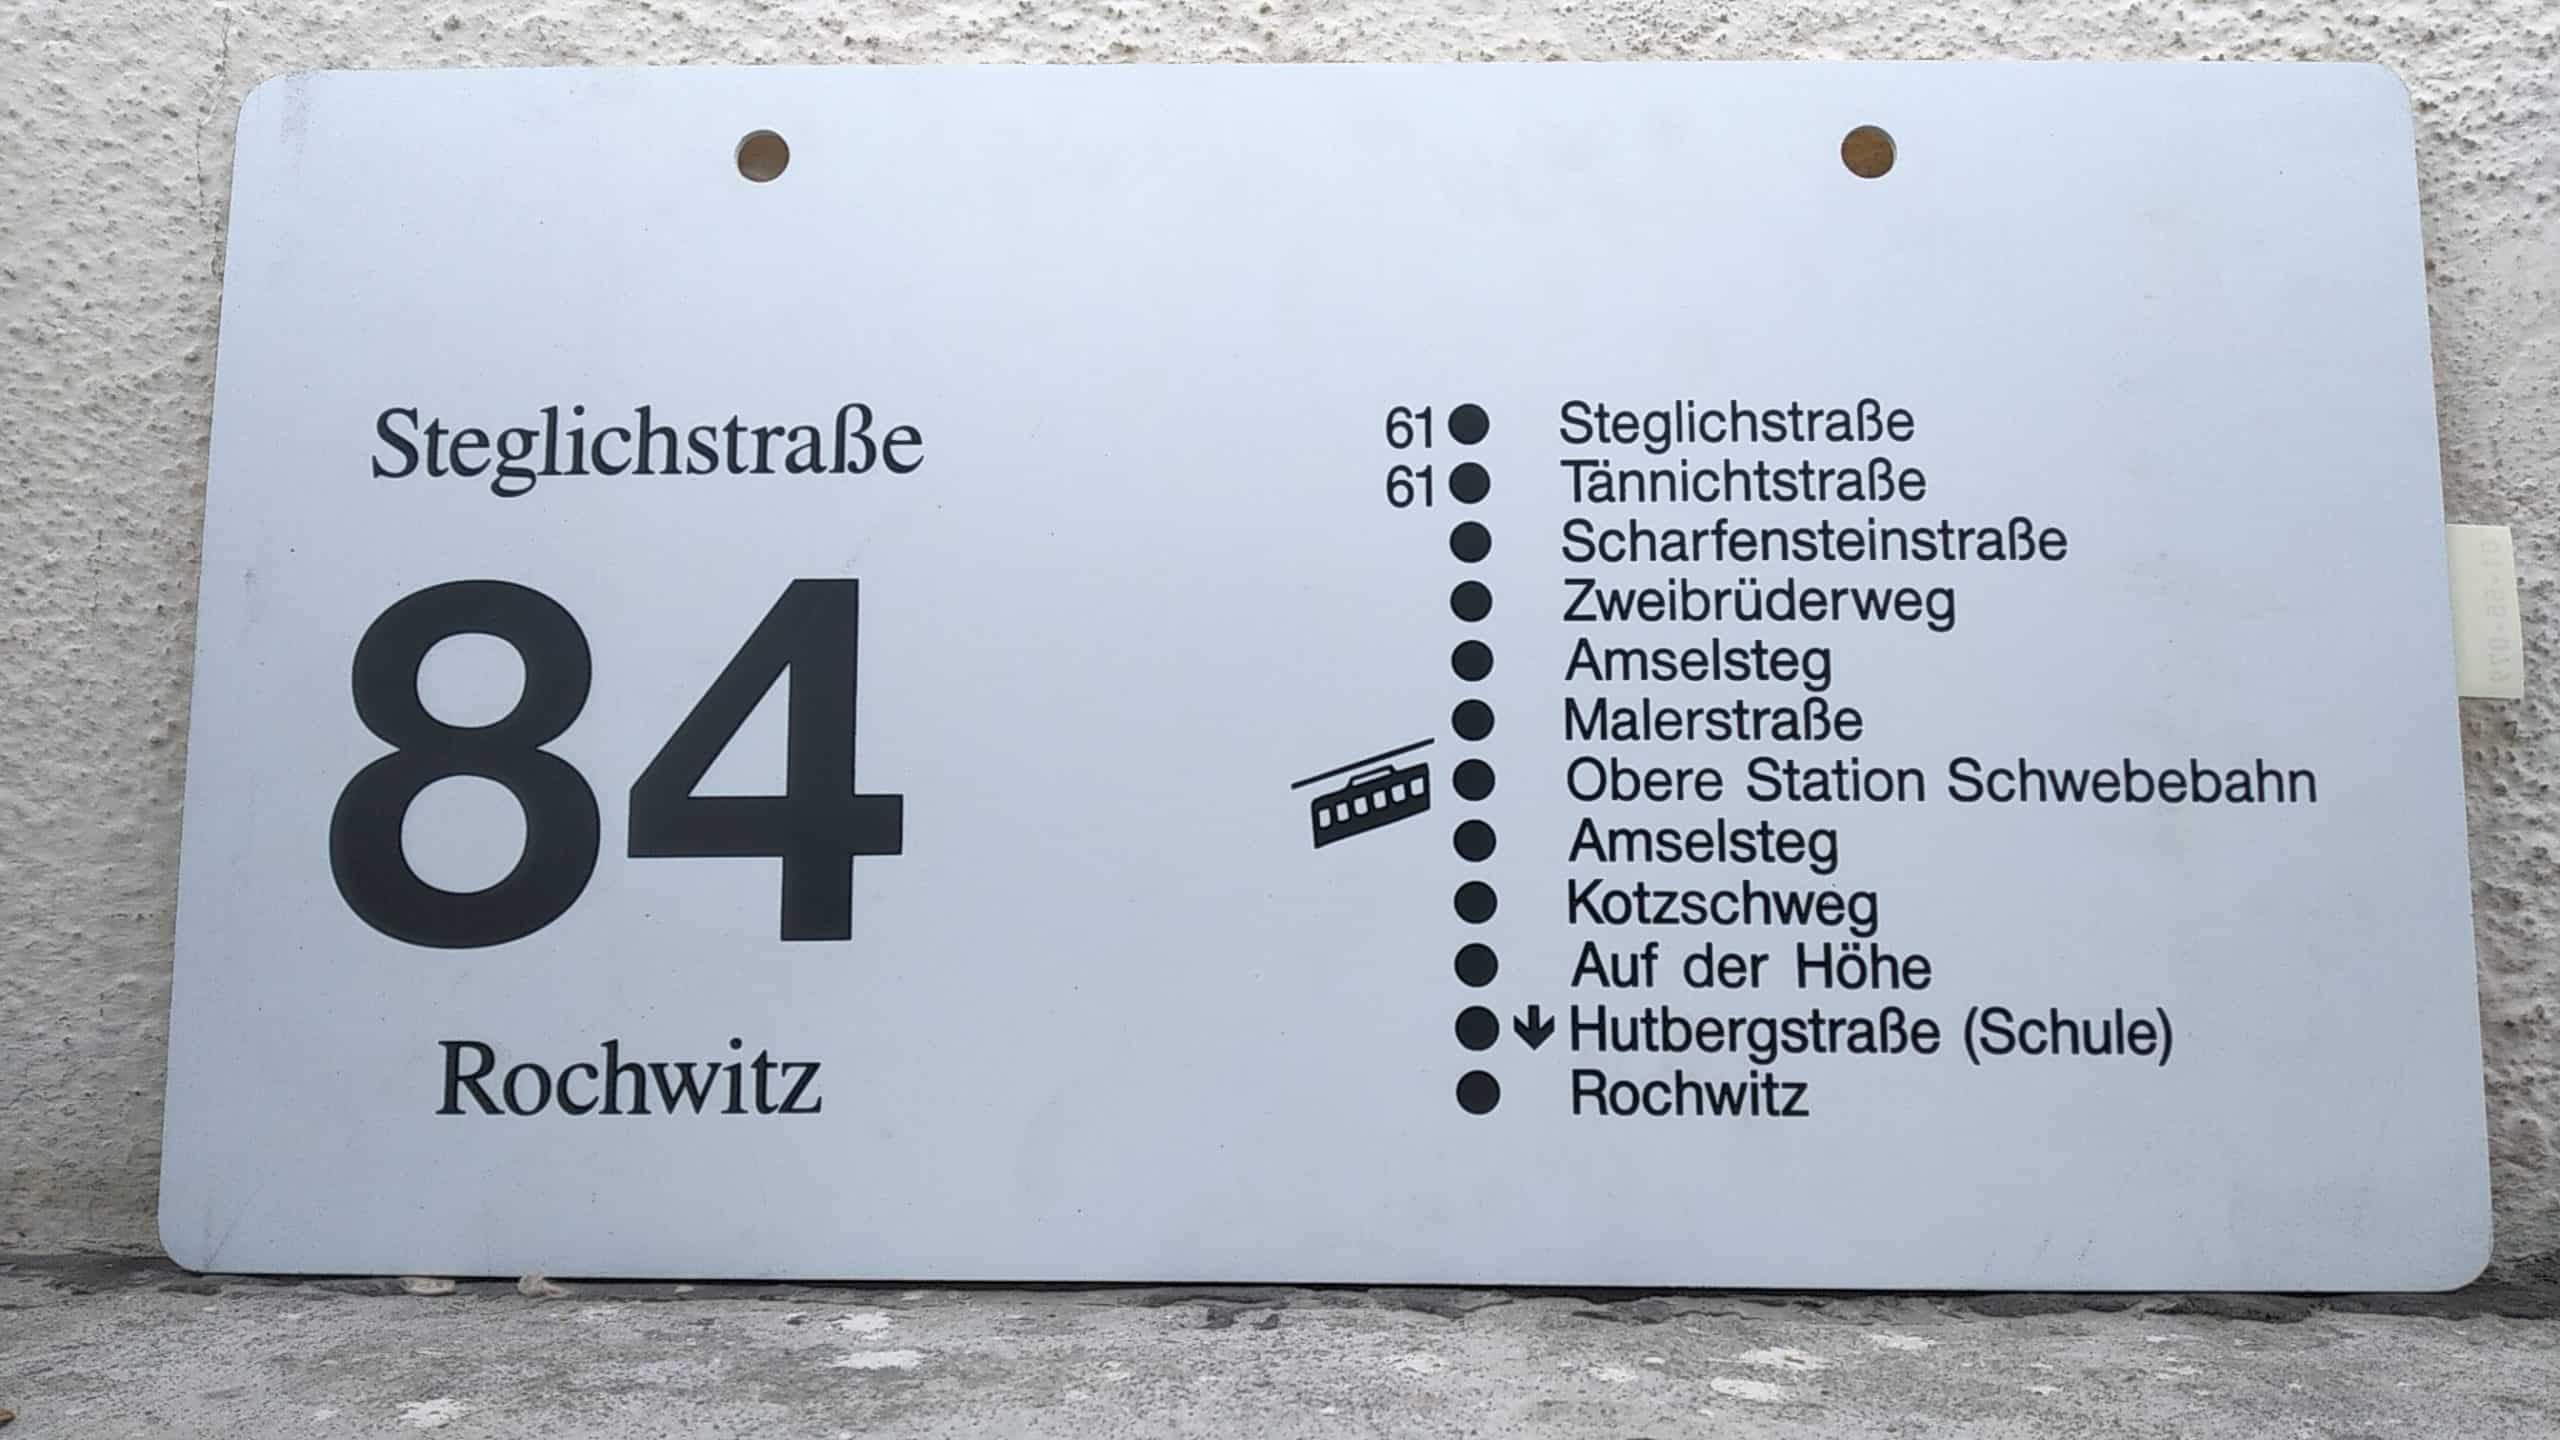 Ein seltenes Bus-Linienschild aus Dresden der Linie 84 von Steglichstraße nach Rochwitz #2